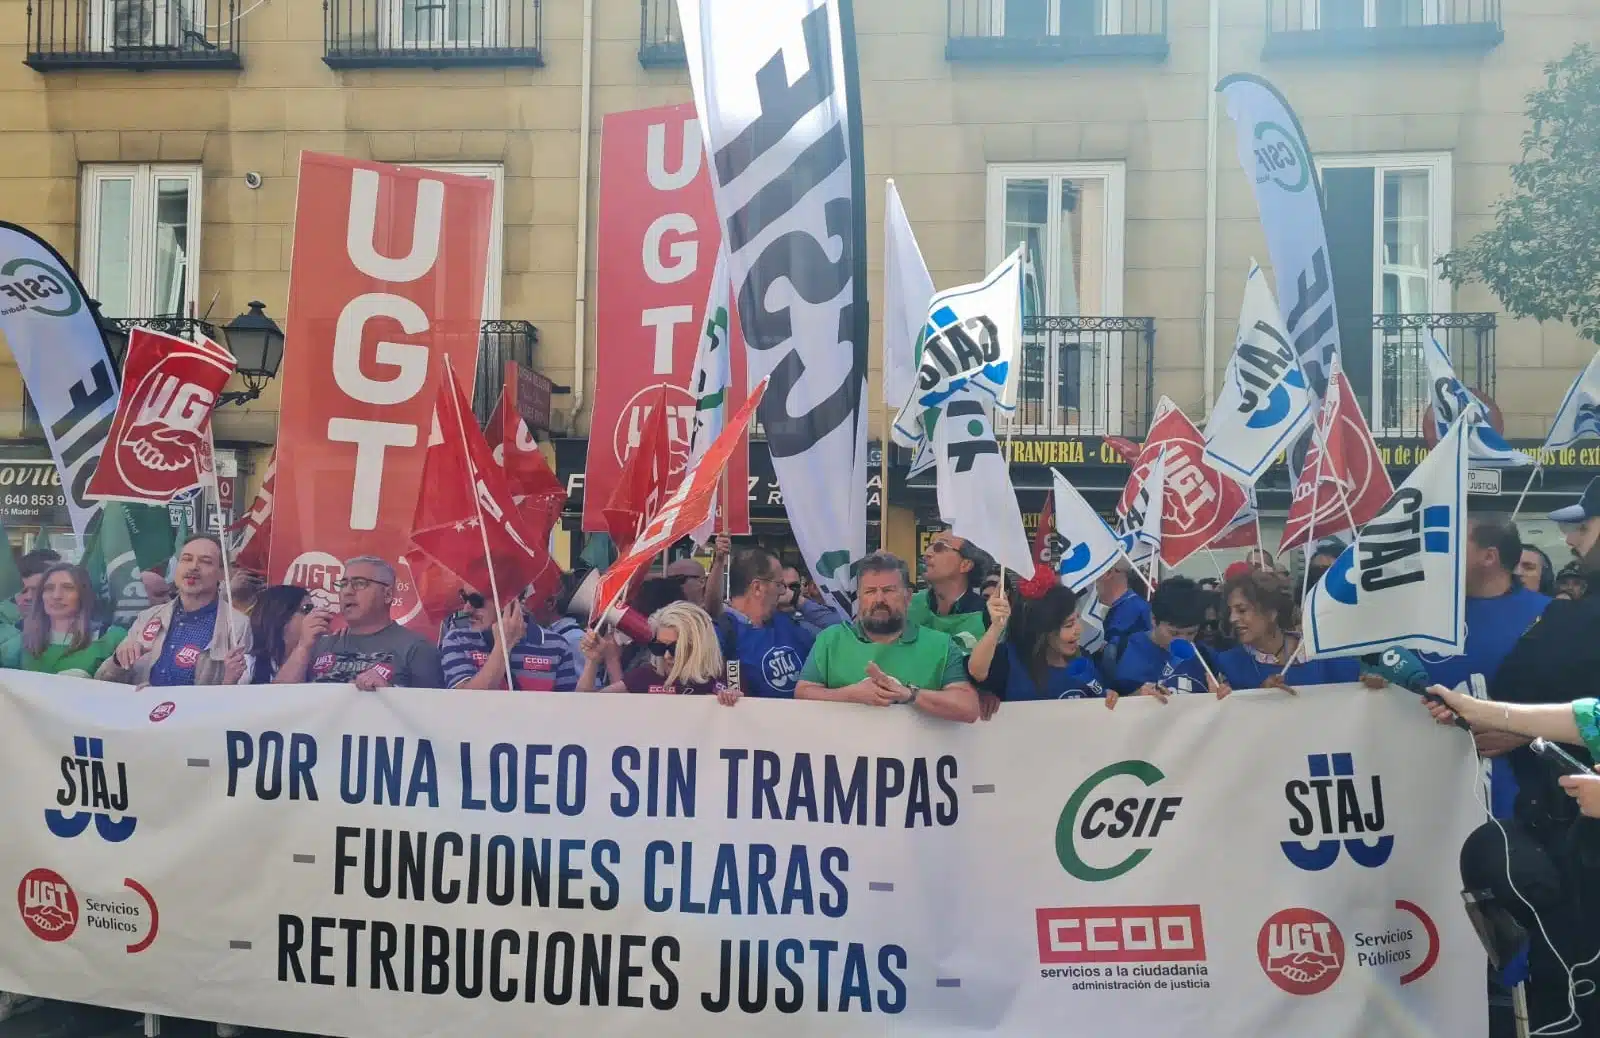 Los sindicatos exigen al Gobierno que haga ya una oferta económica como a LAJs, jueces y fiscales o estudiarán una huelga indefinida